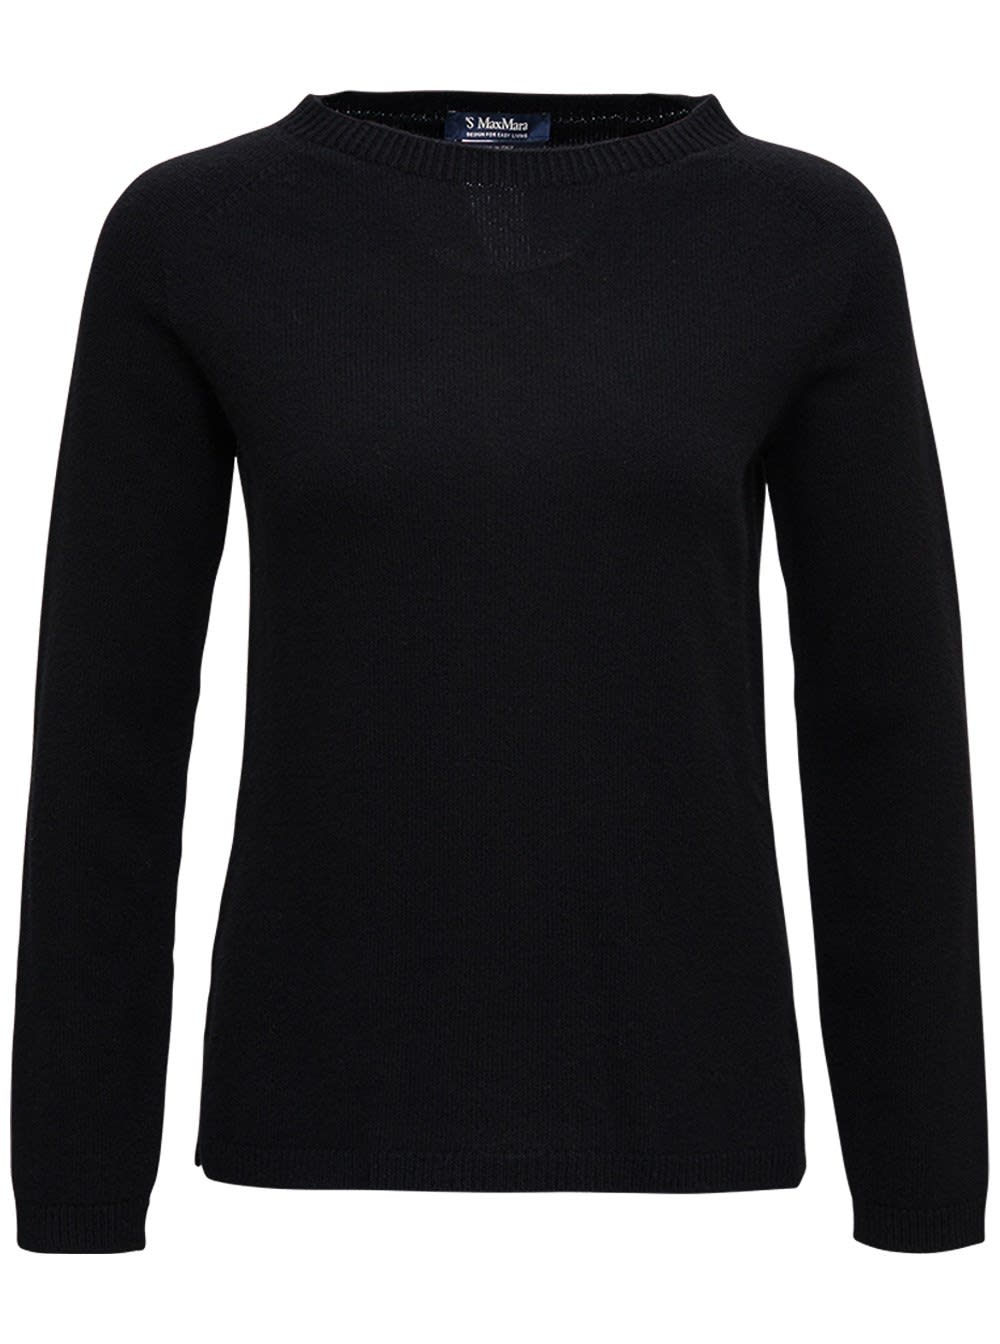 'S Max Mara Giose Sweater In Black Cashmere